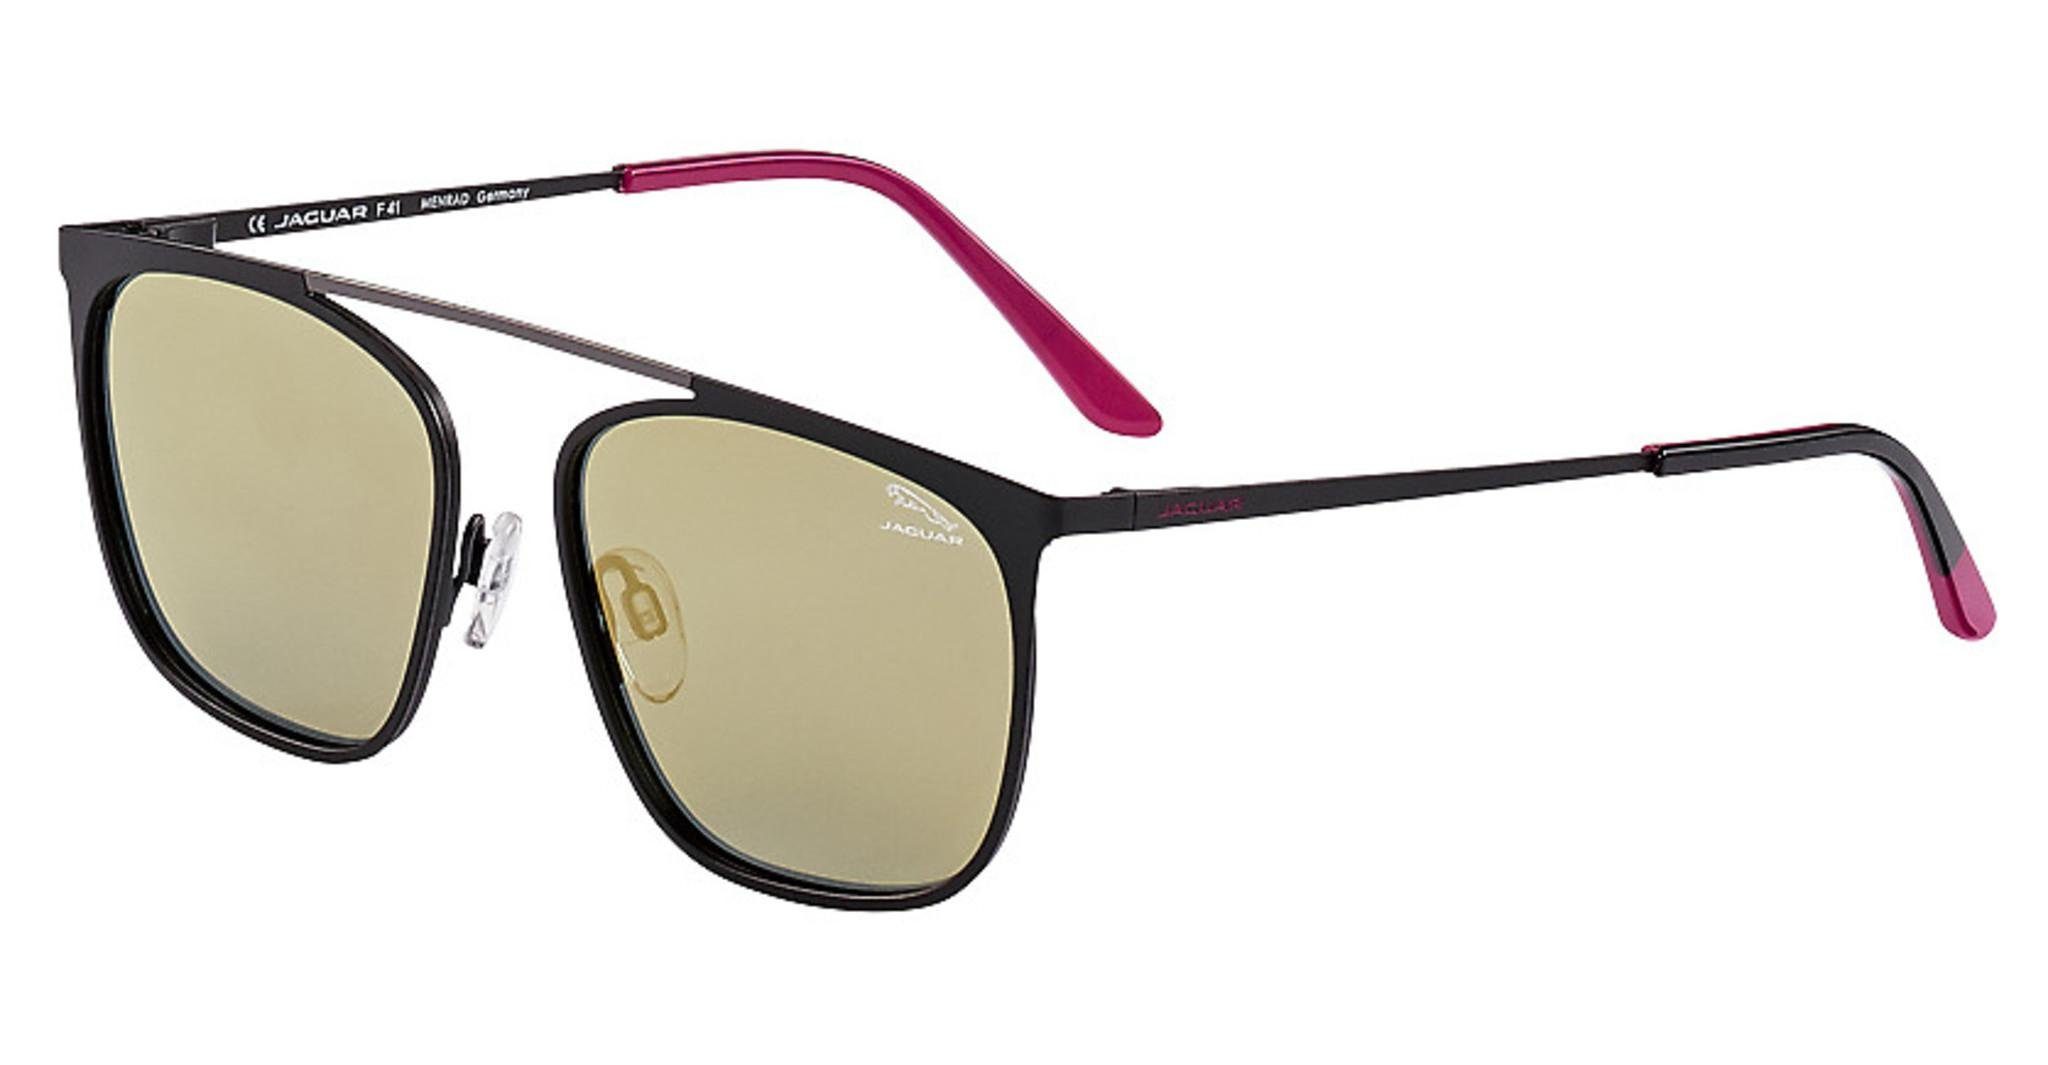 Jaguar Eyewear Sonnenbrille 37587 braun